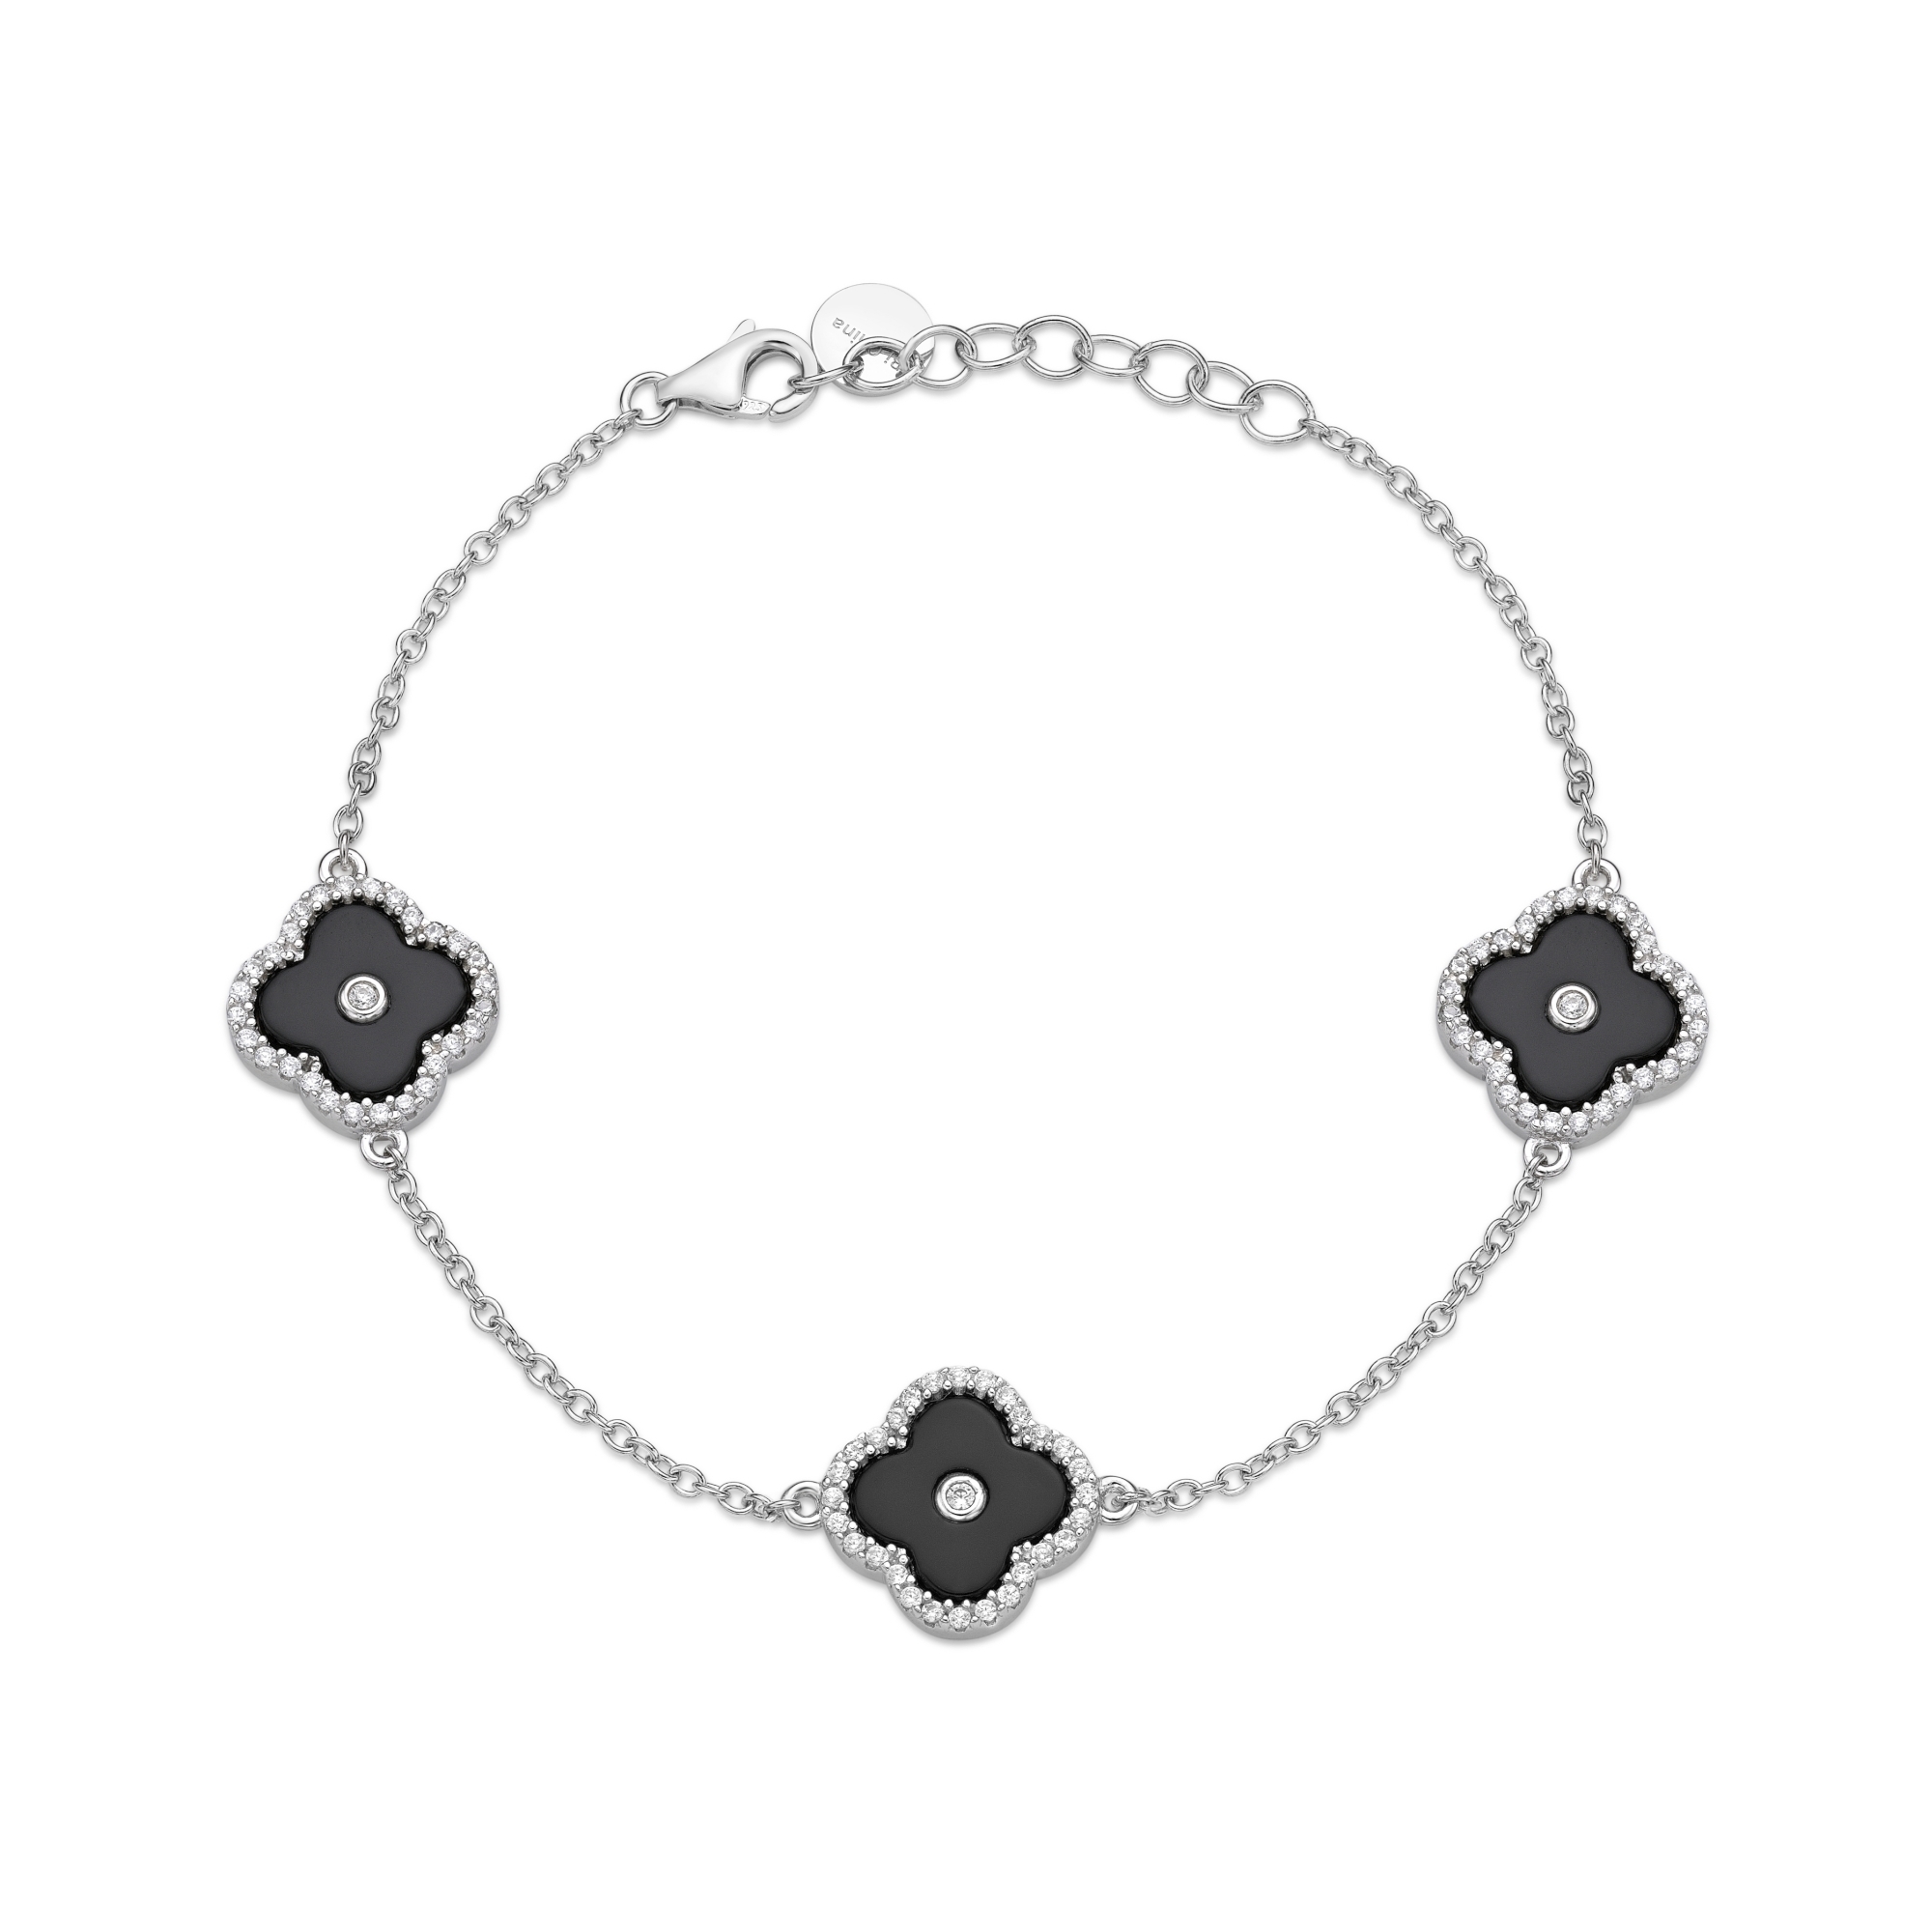 50972-bracelet-fashion-jewelry-sterling-silver-50972-2.jpg